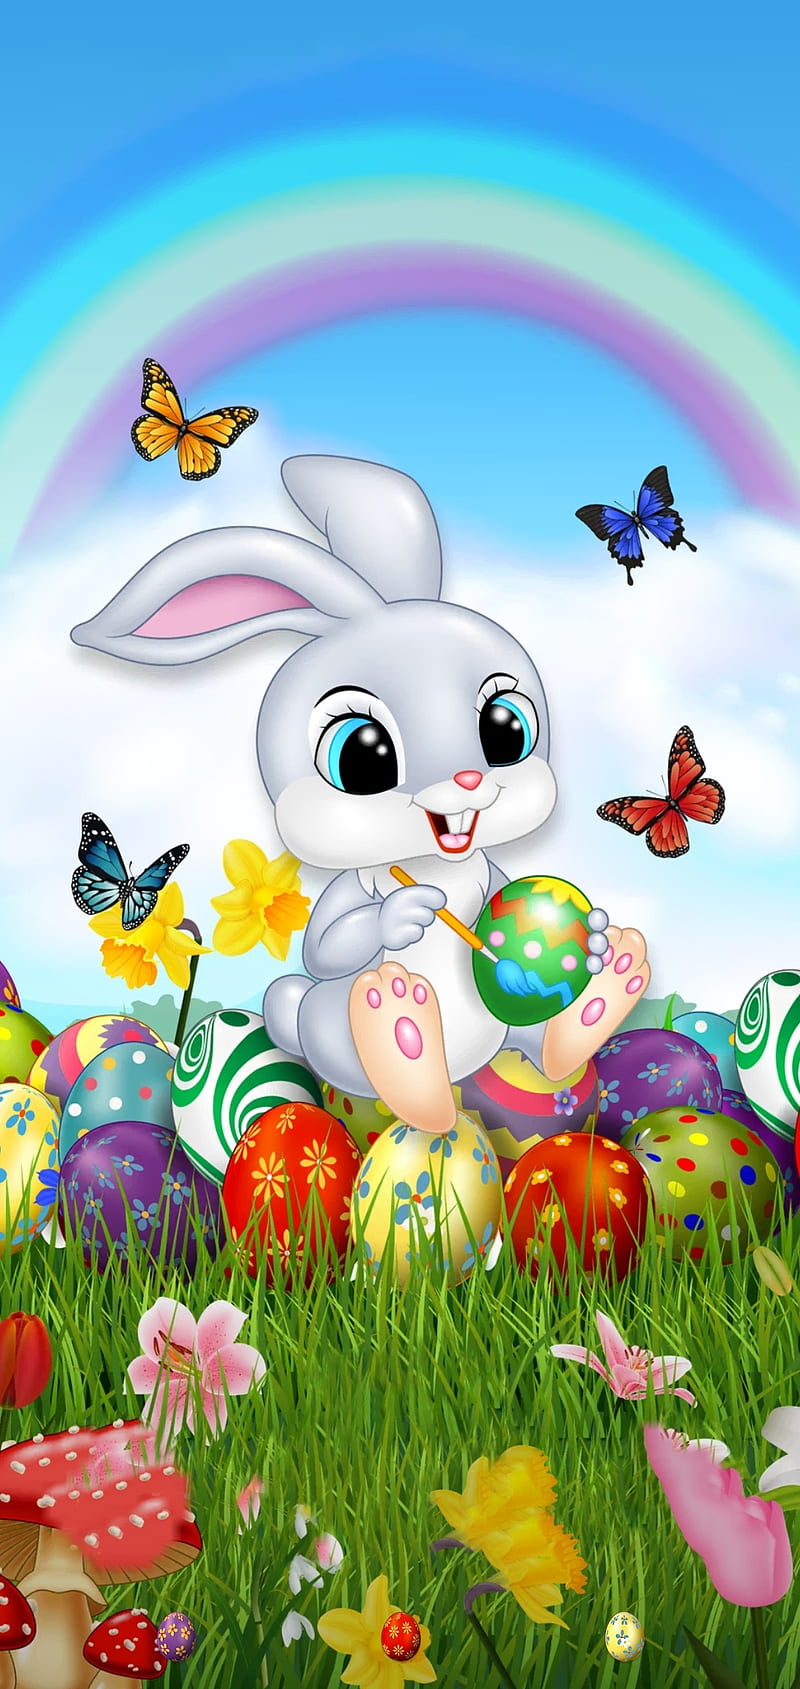 Easter Bunny Wallpapers Free download  PixelsTalkNet